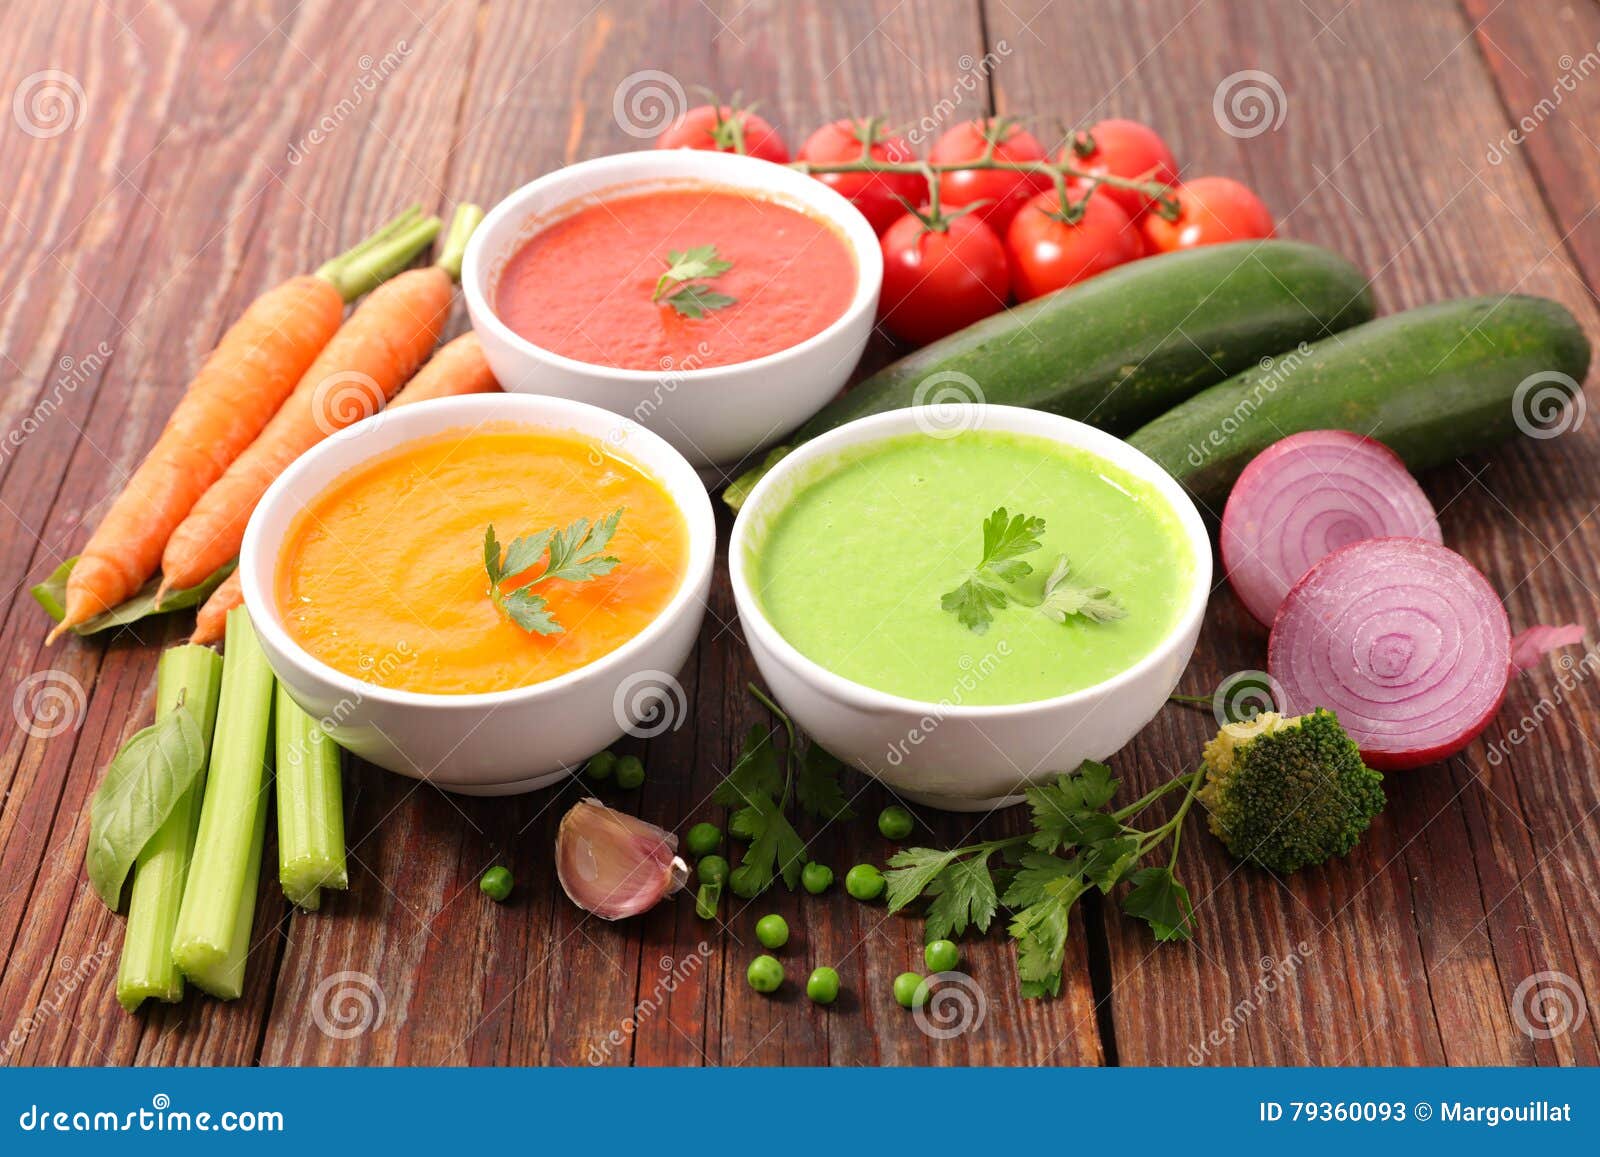 Диетический сельдерей. Овощной суп для похудения. Диета на супе из сельдерея. Сельдереевый суп для похудения. Холодный суп для похудения.